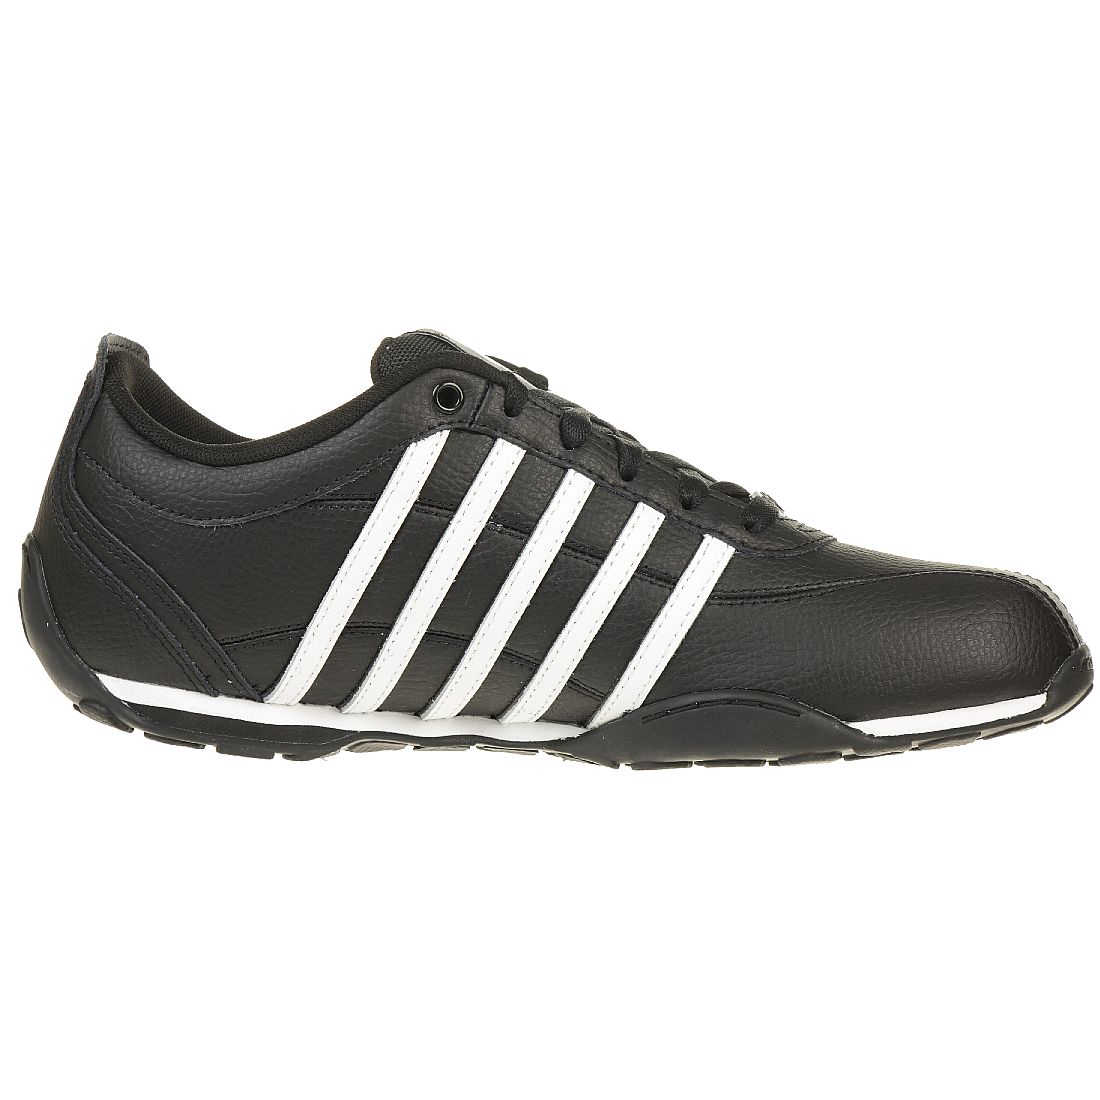 K-SWISS Arvee 1.5 Schuhe Sneaker schwarz  02453-040-M